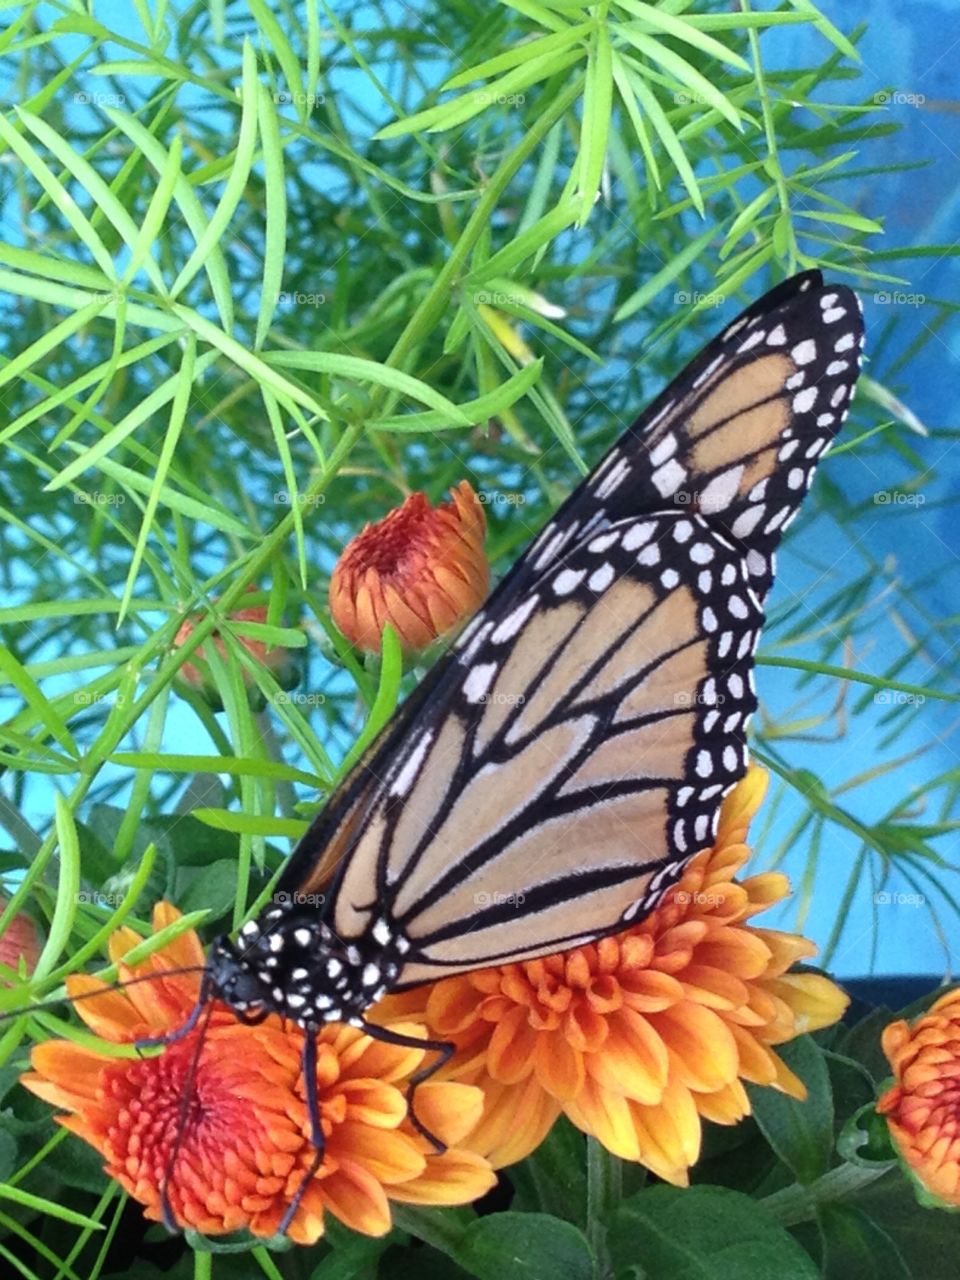 Monarch Butterfly on Flower 